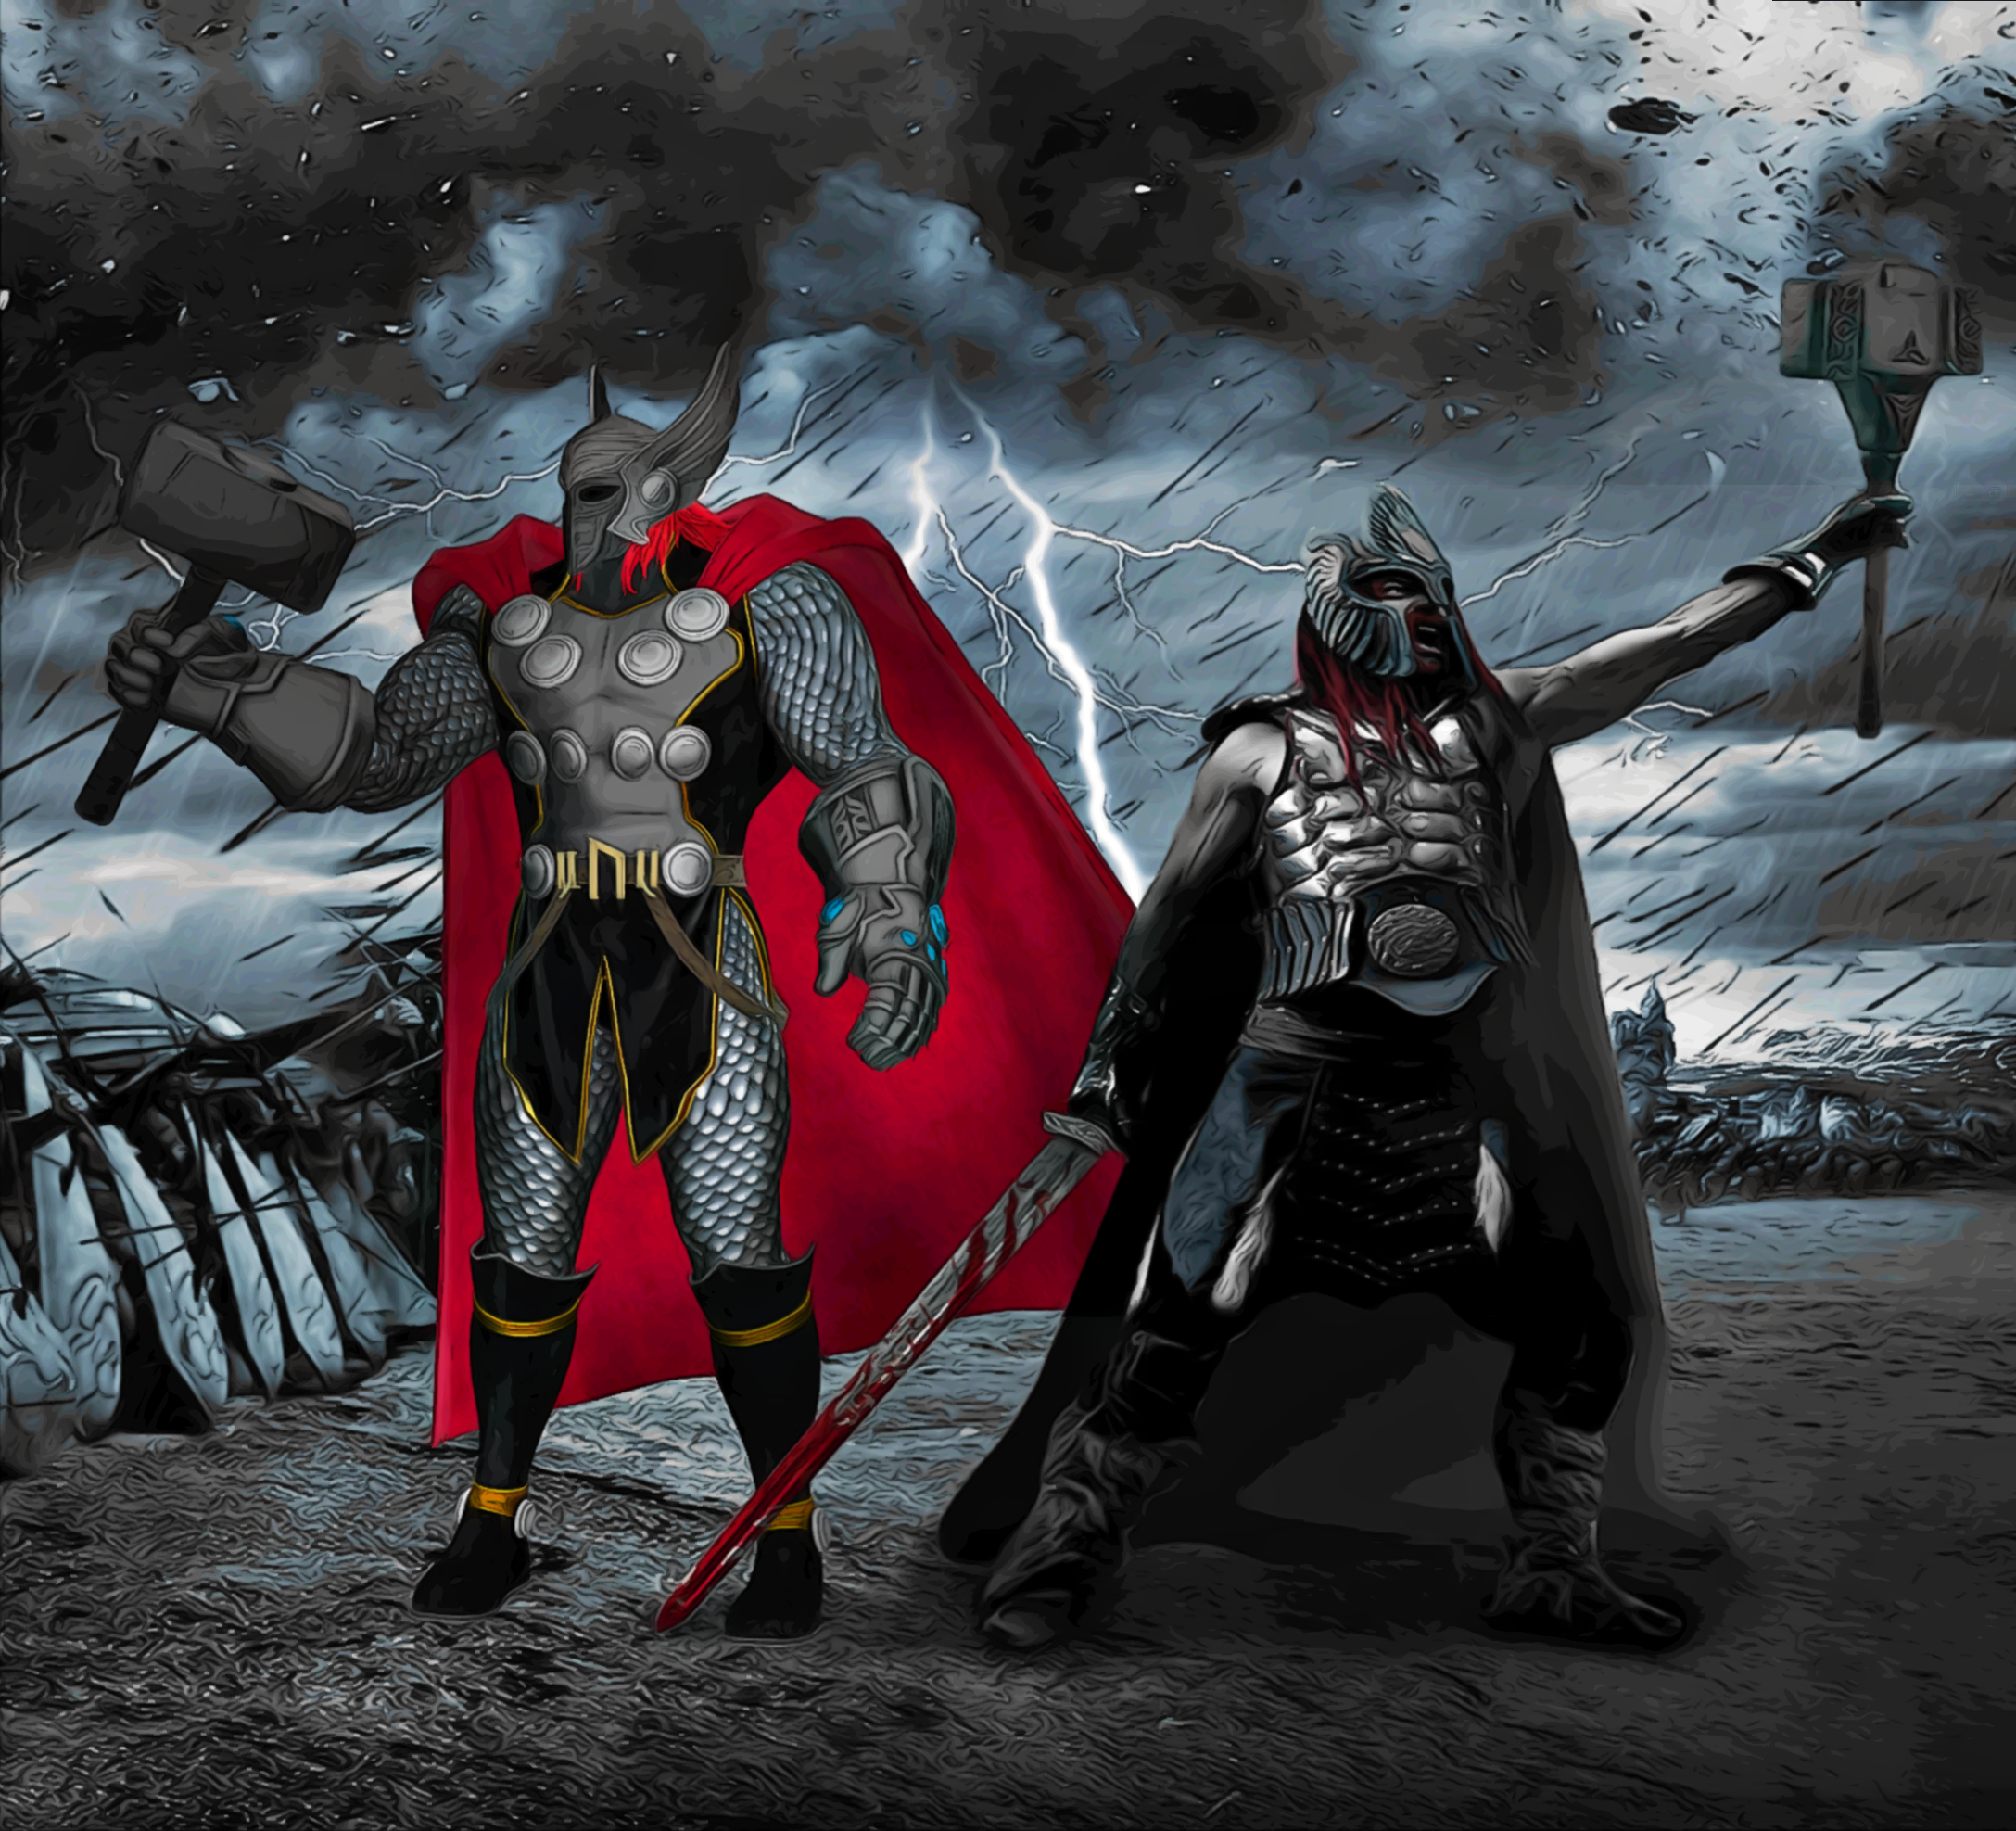 Thor - God of War by Dark-Rider28 on DeviantArt